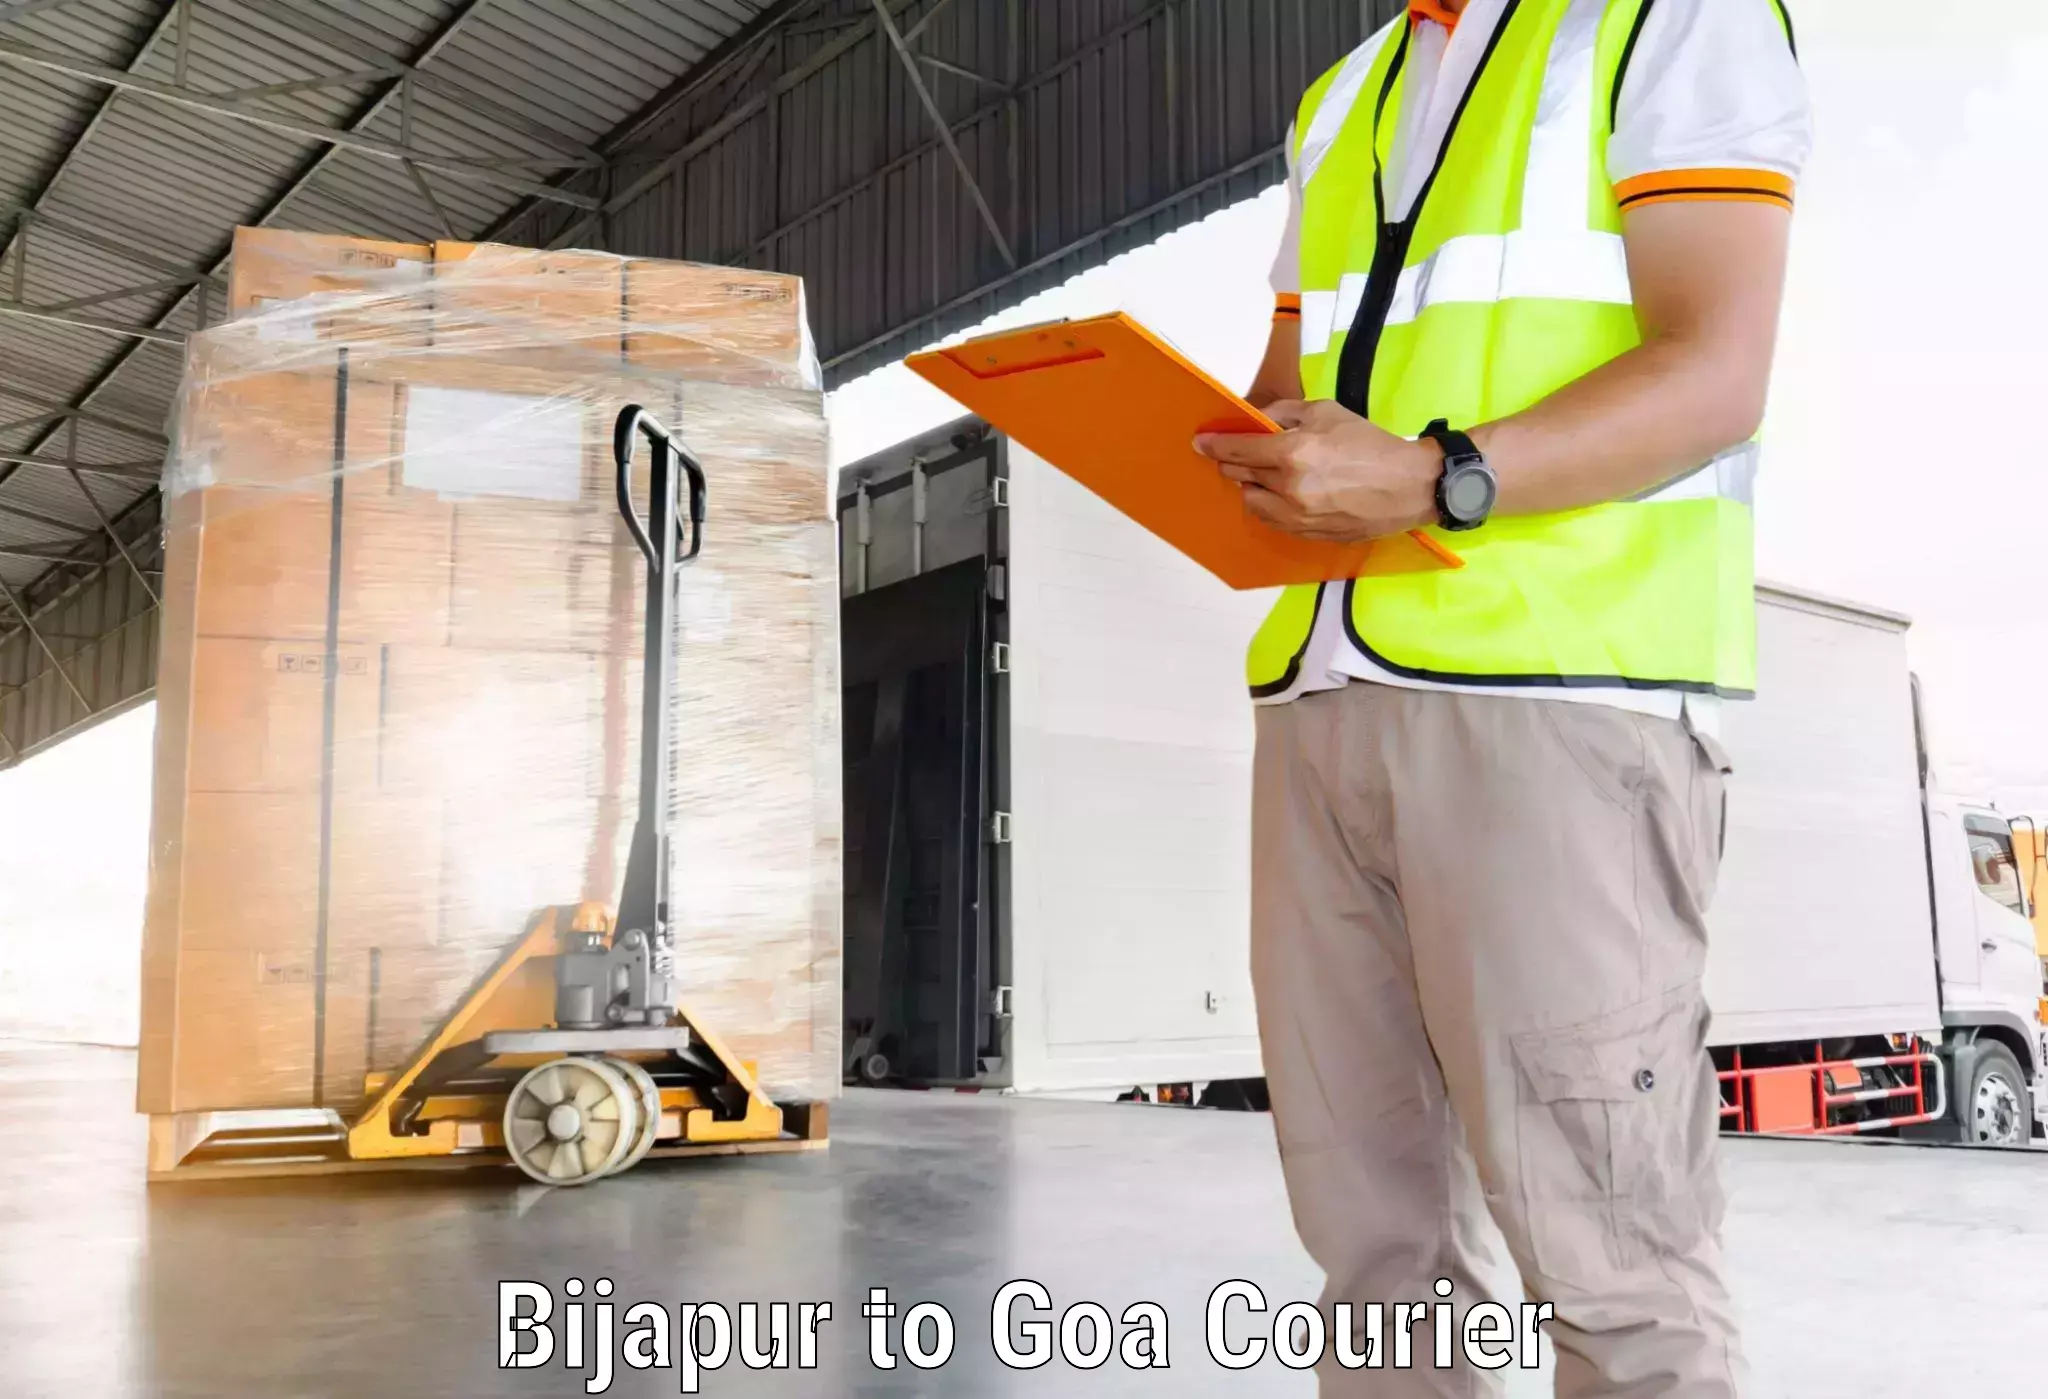 Flexible delivery schedules Bijapur to Panaji